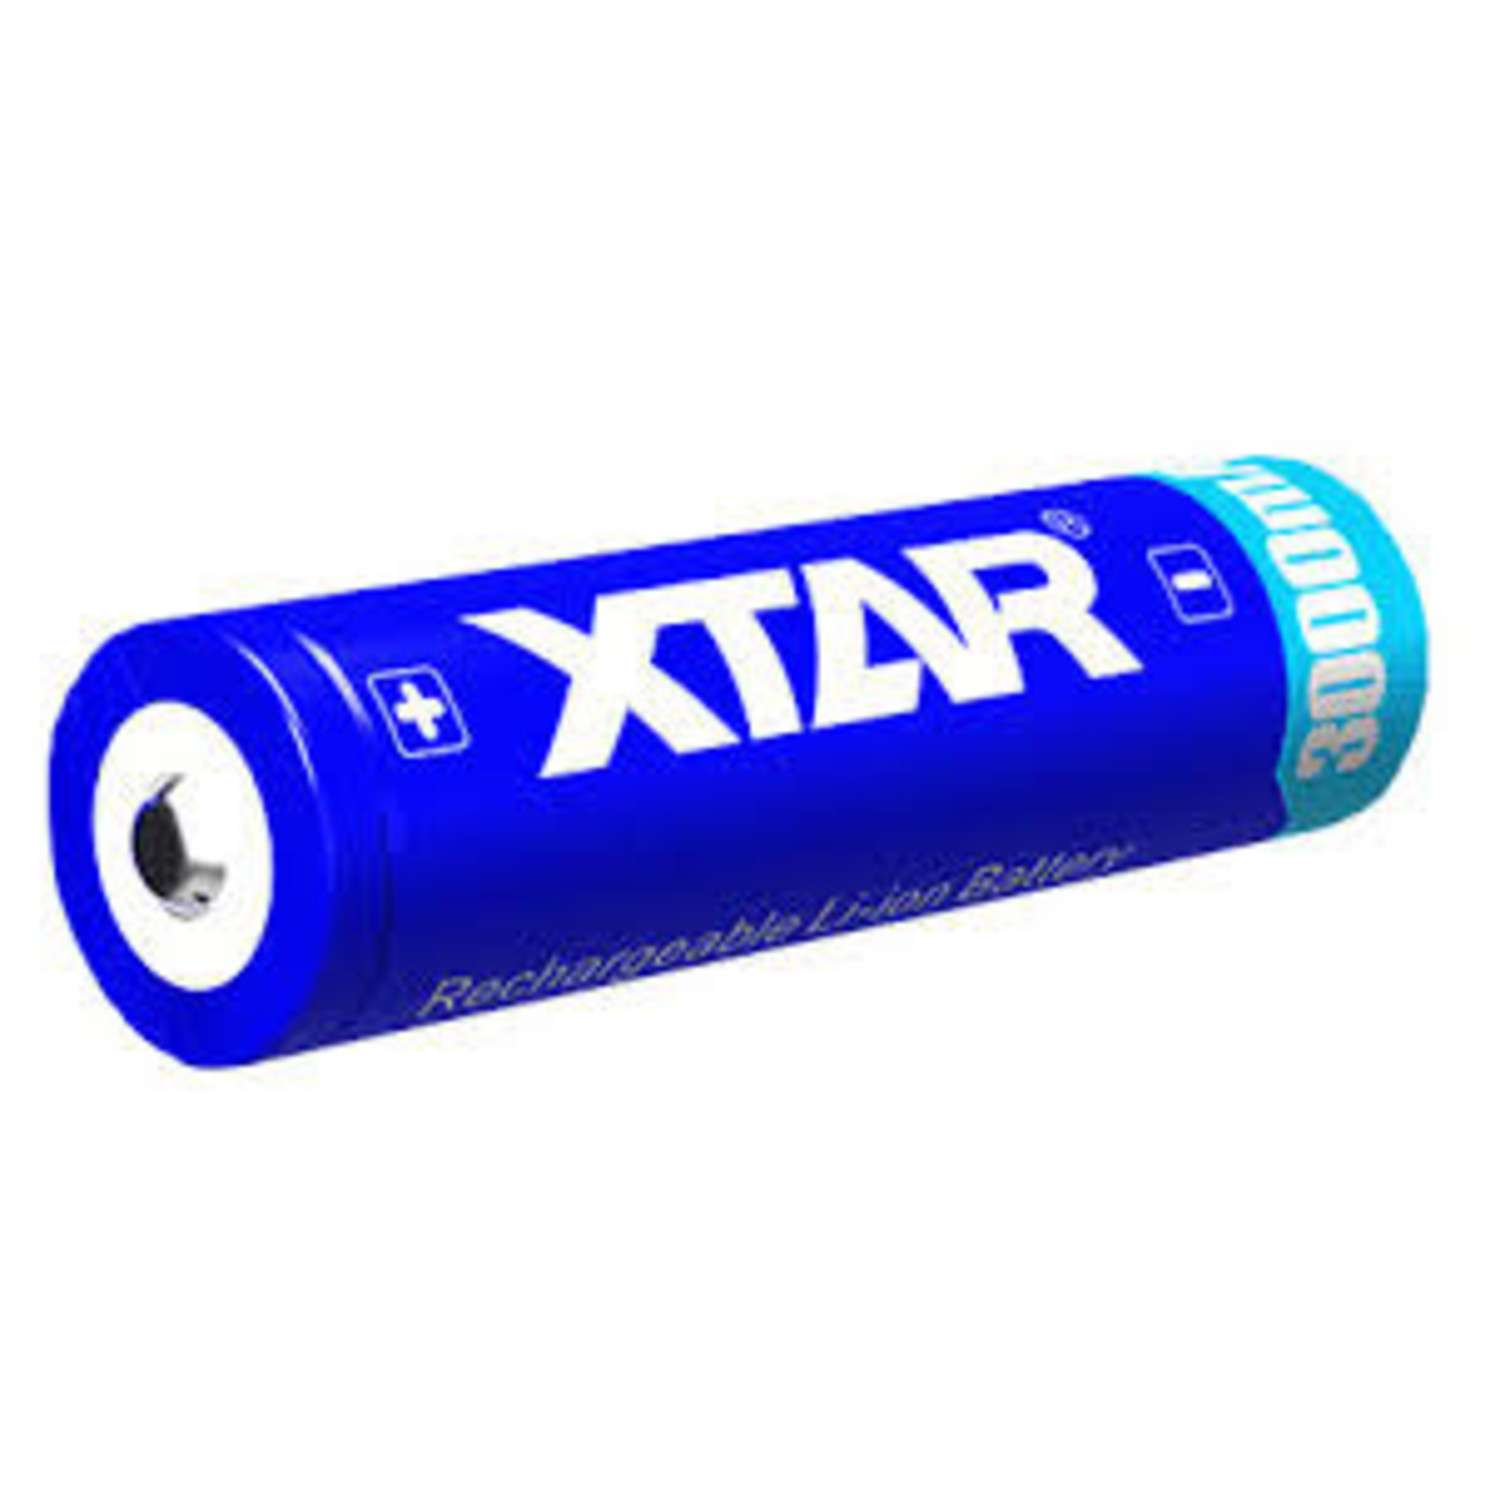 compleet Kwijtschelding Landschap Xtar 18650 oplaadbare Li-ion batterij 3,6V 3000 mAh. (lithium-ion) -  Batterijenstunter.nl